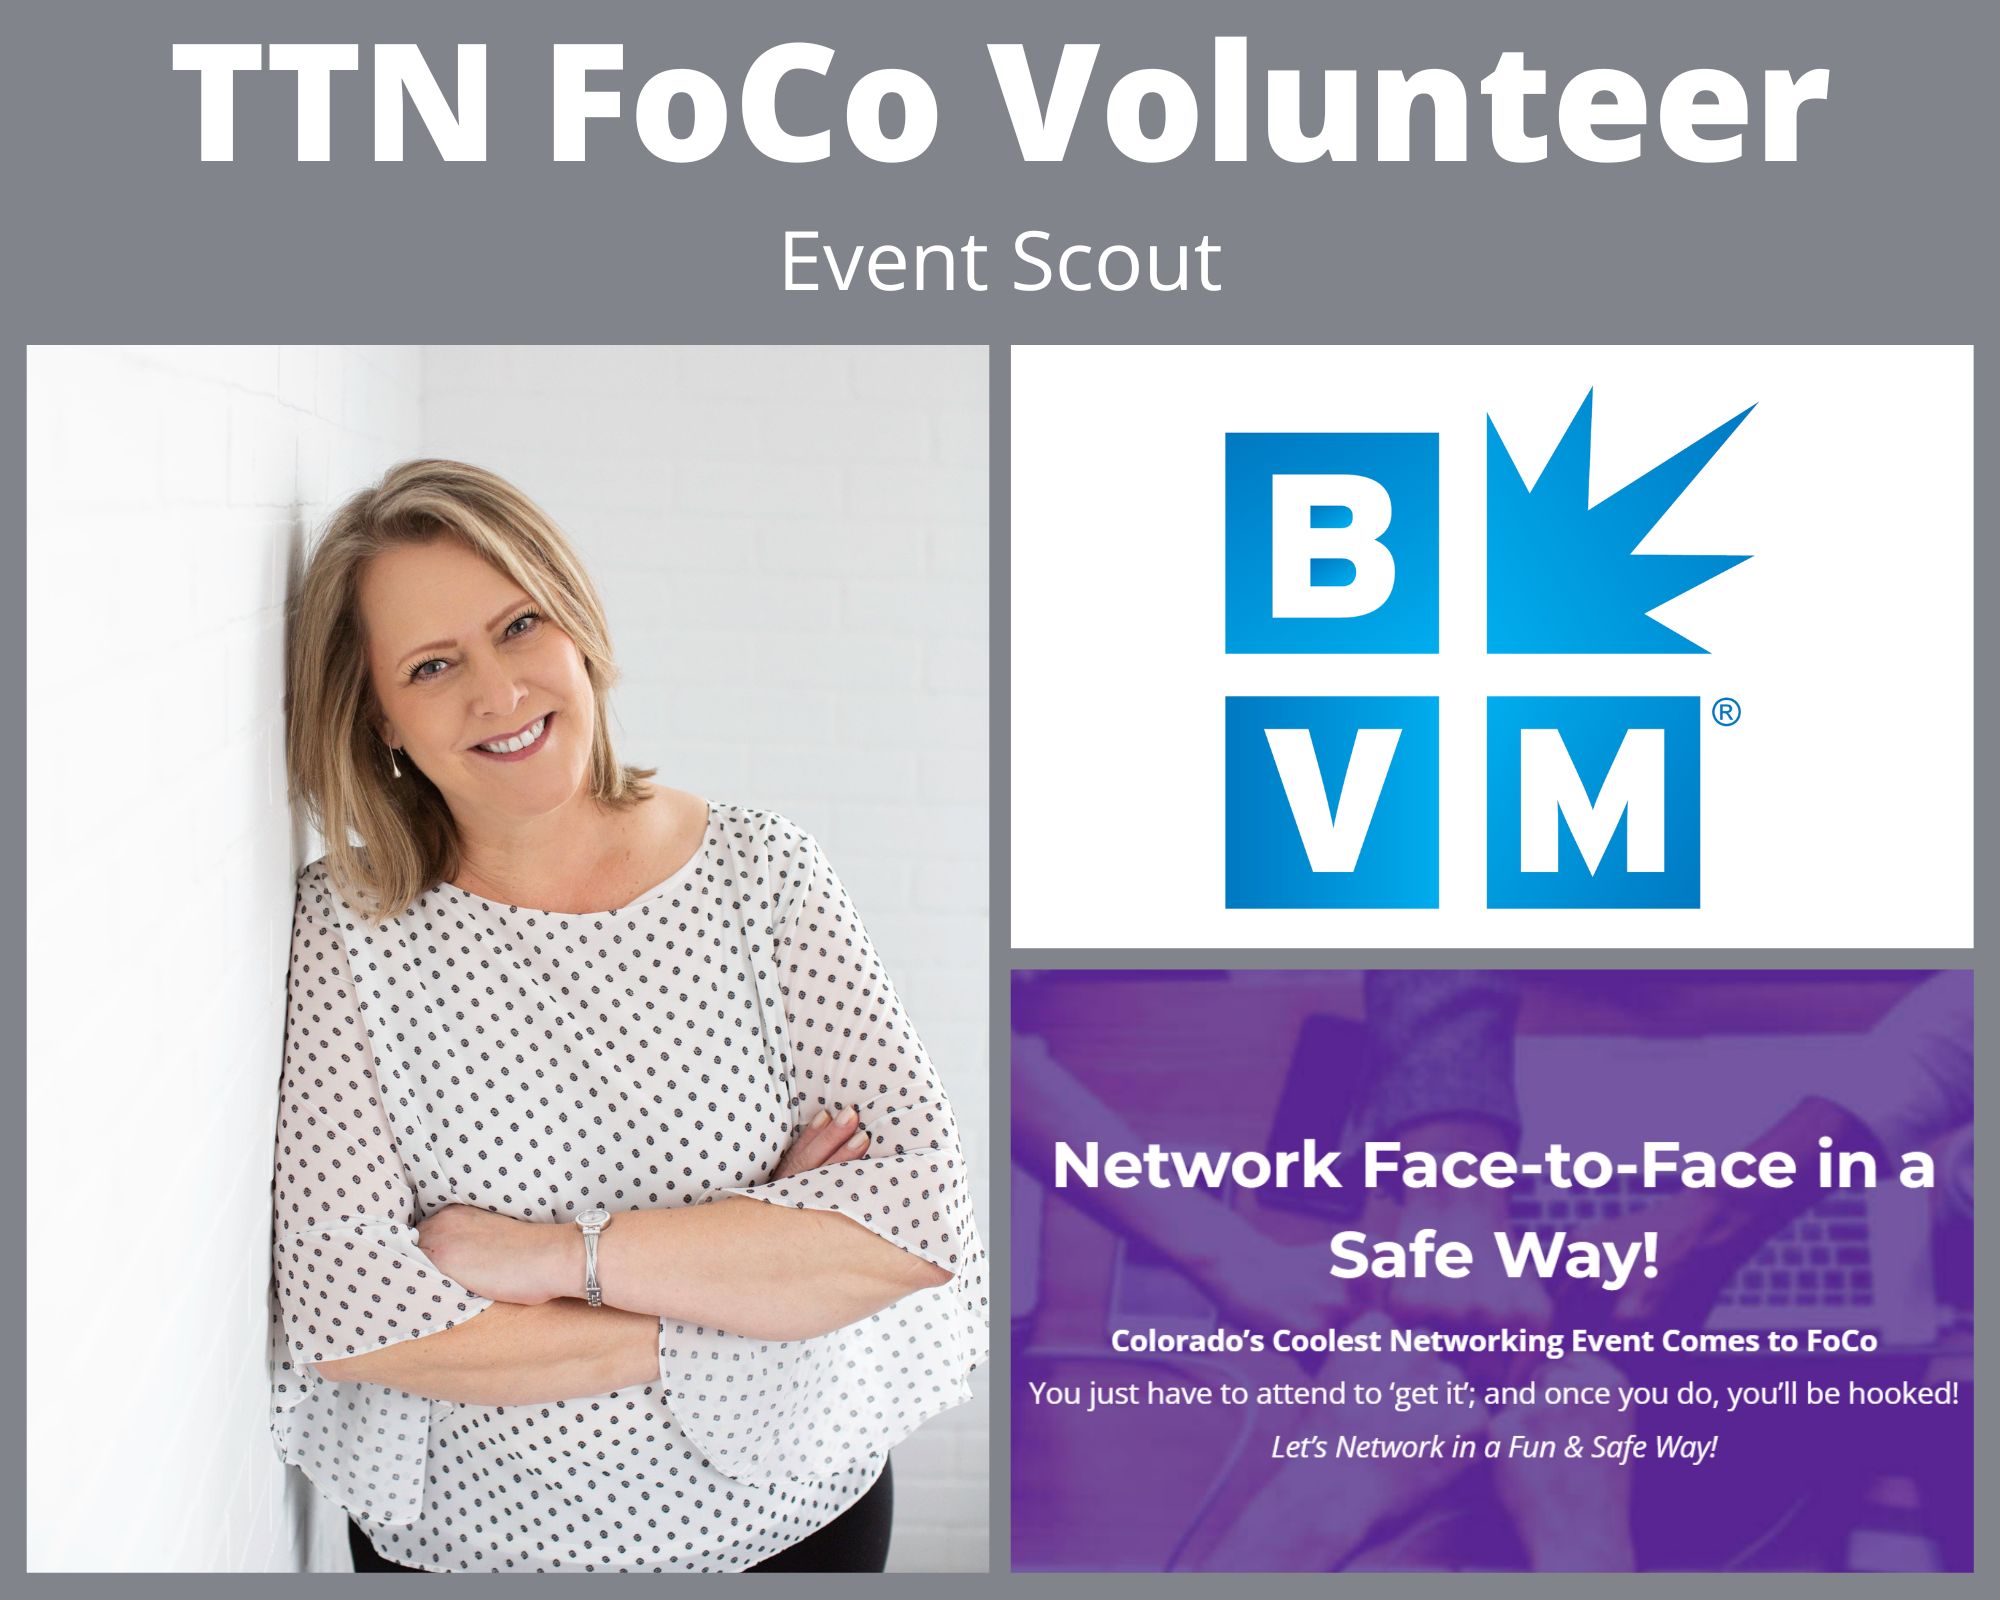 TTN FoCo Volunteer Oct22 Laurie Scott - Event Scout